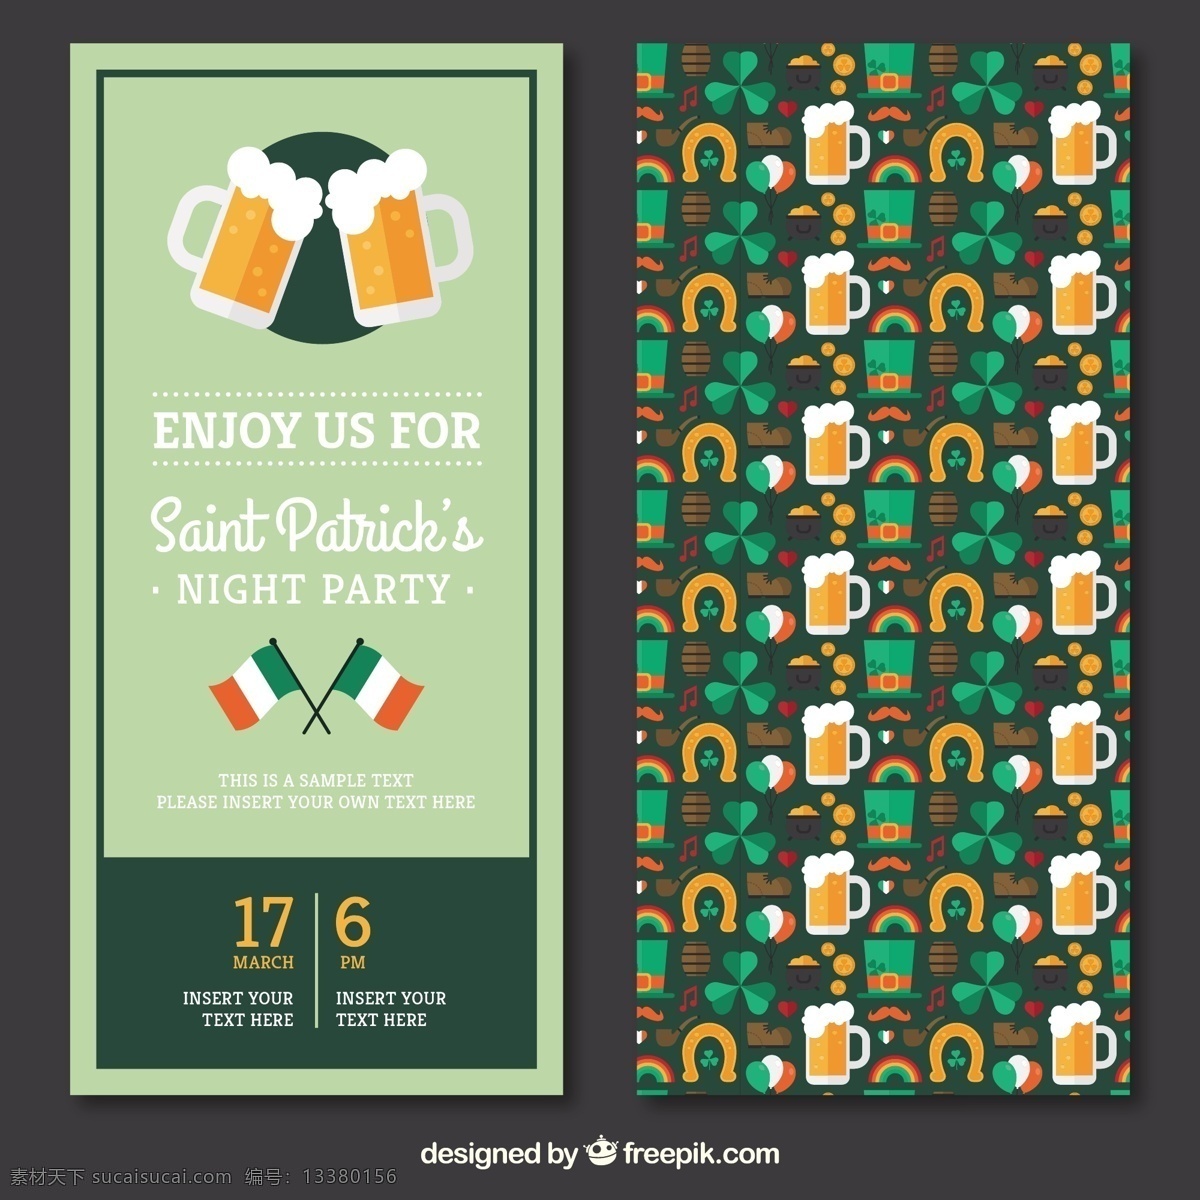 圣 巴特里克 节 聚会 邀请 海报 传单 邀请卡 啤酒 绿色 庆典 晚会海报 请柬 聚会传单 圣帕特里克日 庆祝 爱尔兰人 一天 圣帕特里克 爱尔兰 帕特里克 灰色